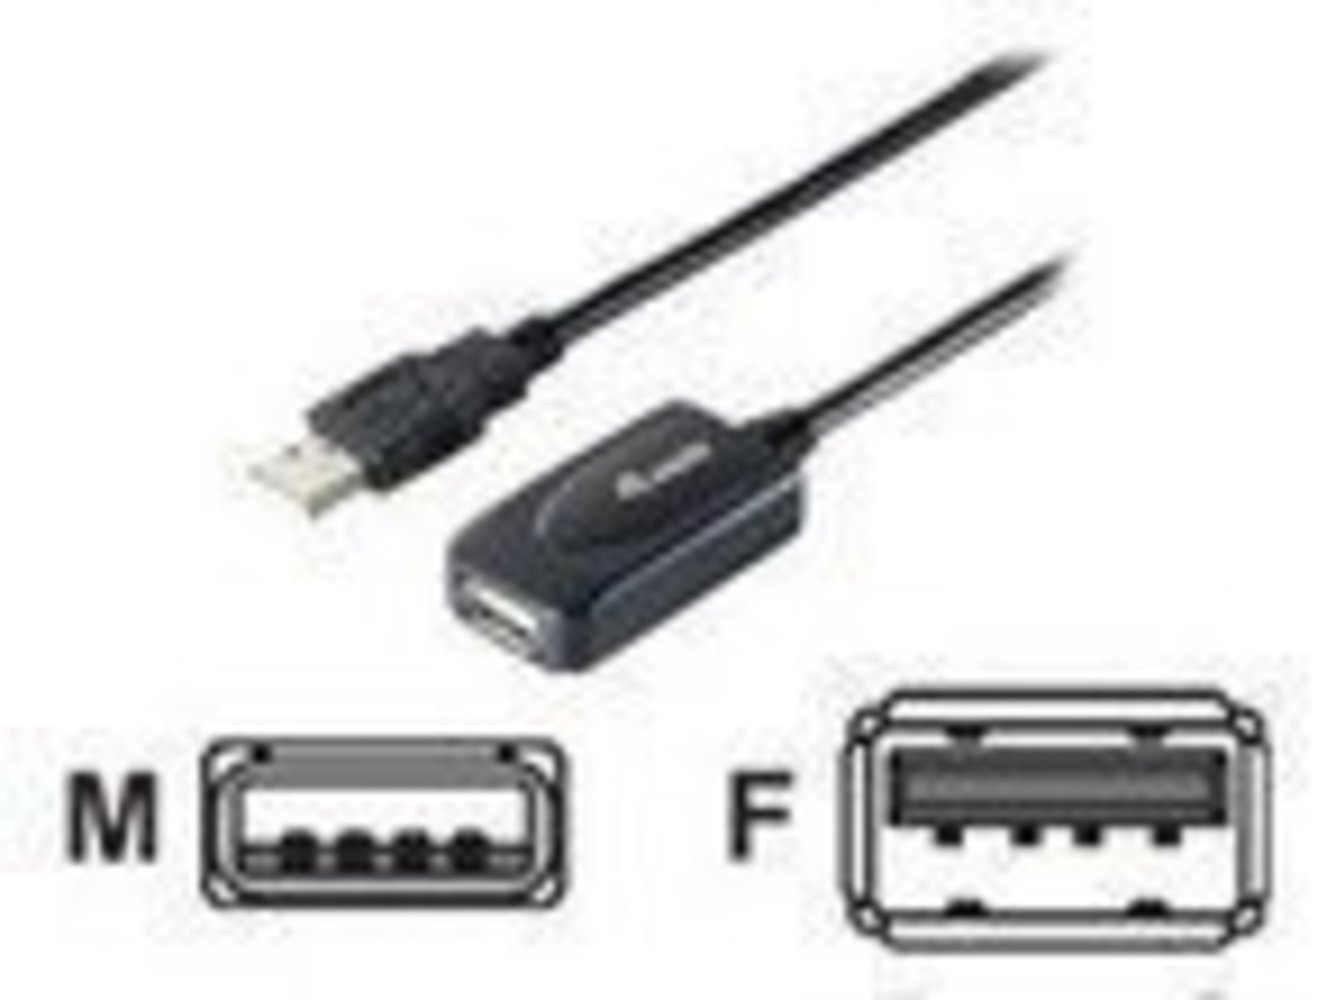 EQUIP USB2.0 Aktive Verlängerung 5m schwarz mit Signalverstärker USB-A S/B - Hochwertige USB2.0 Verlängerung mit Aktivtechnologie